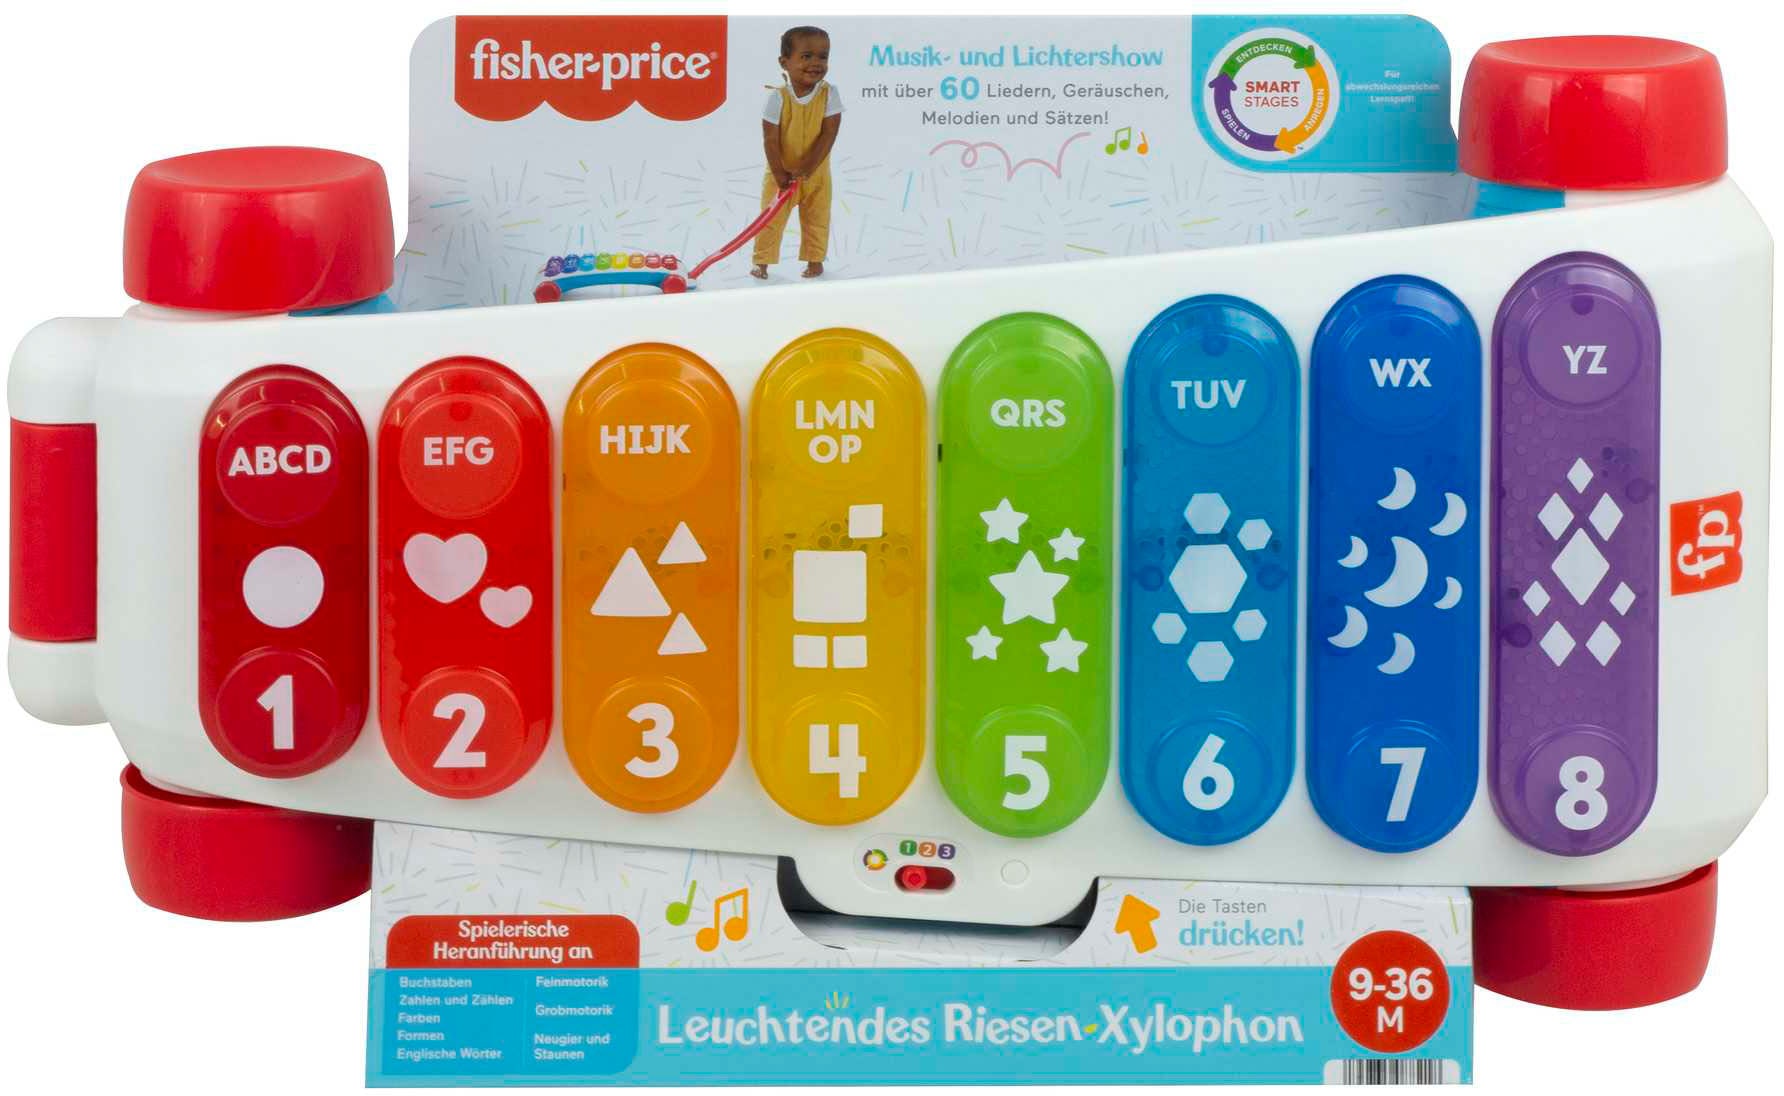 Riesen-Xylophon« kaufen Fisher-Price® online »Leuchtendes Spielzeug-Musikinstrument